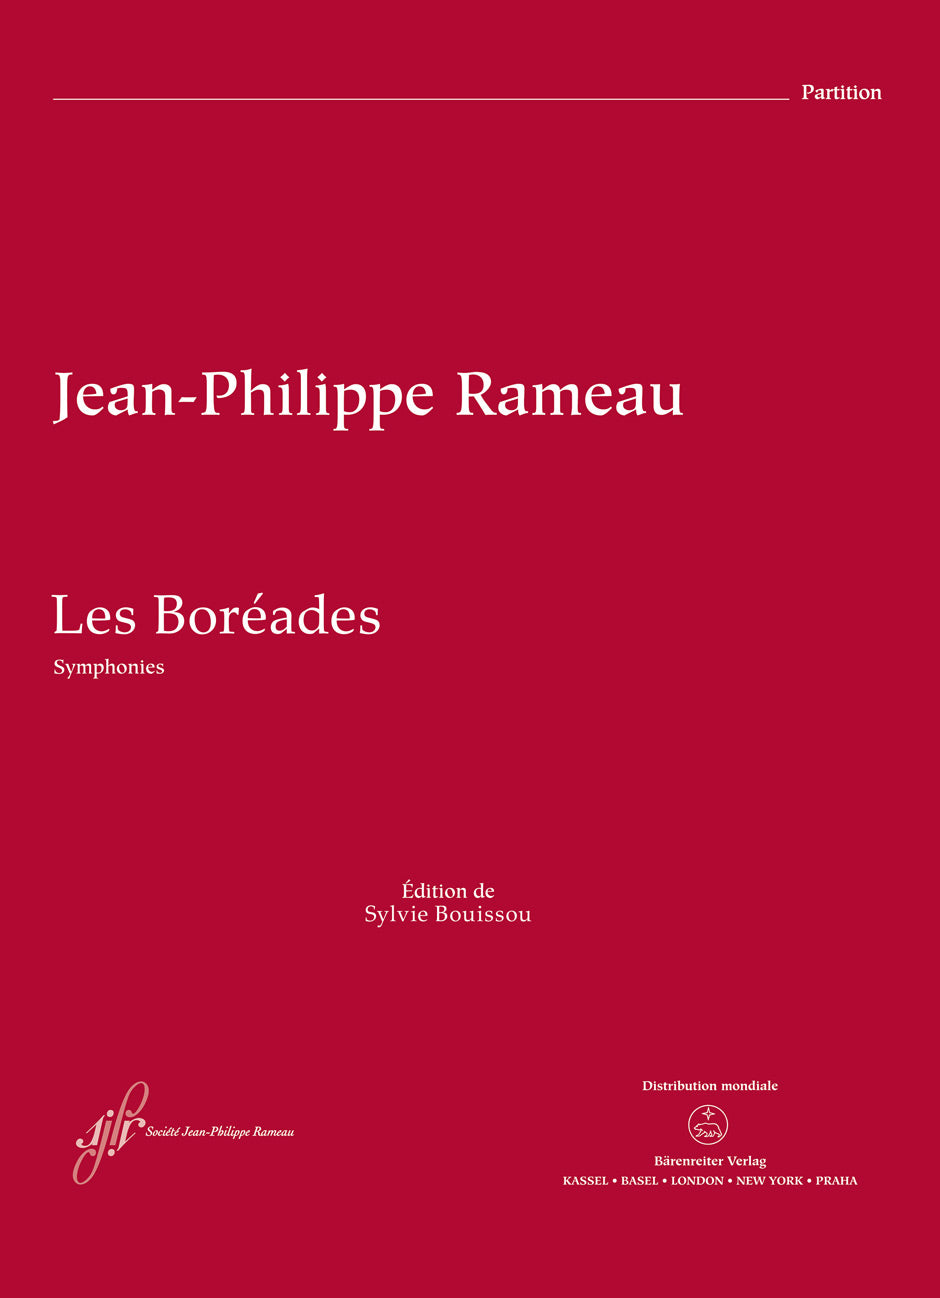 Rameau: Symphonies from Les Boréades, RCT 31